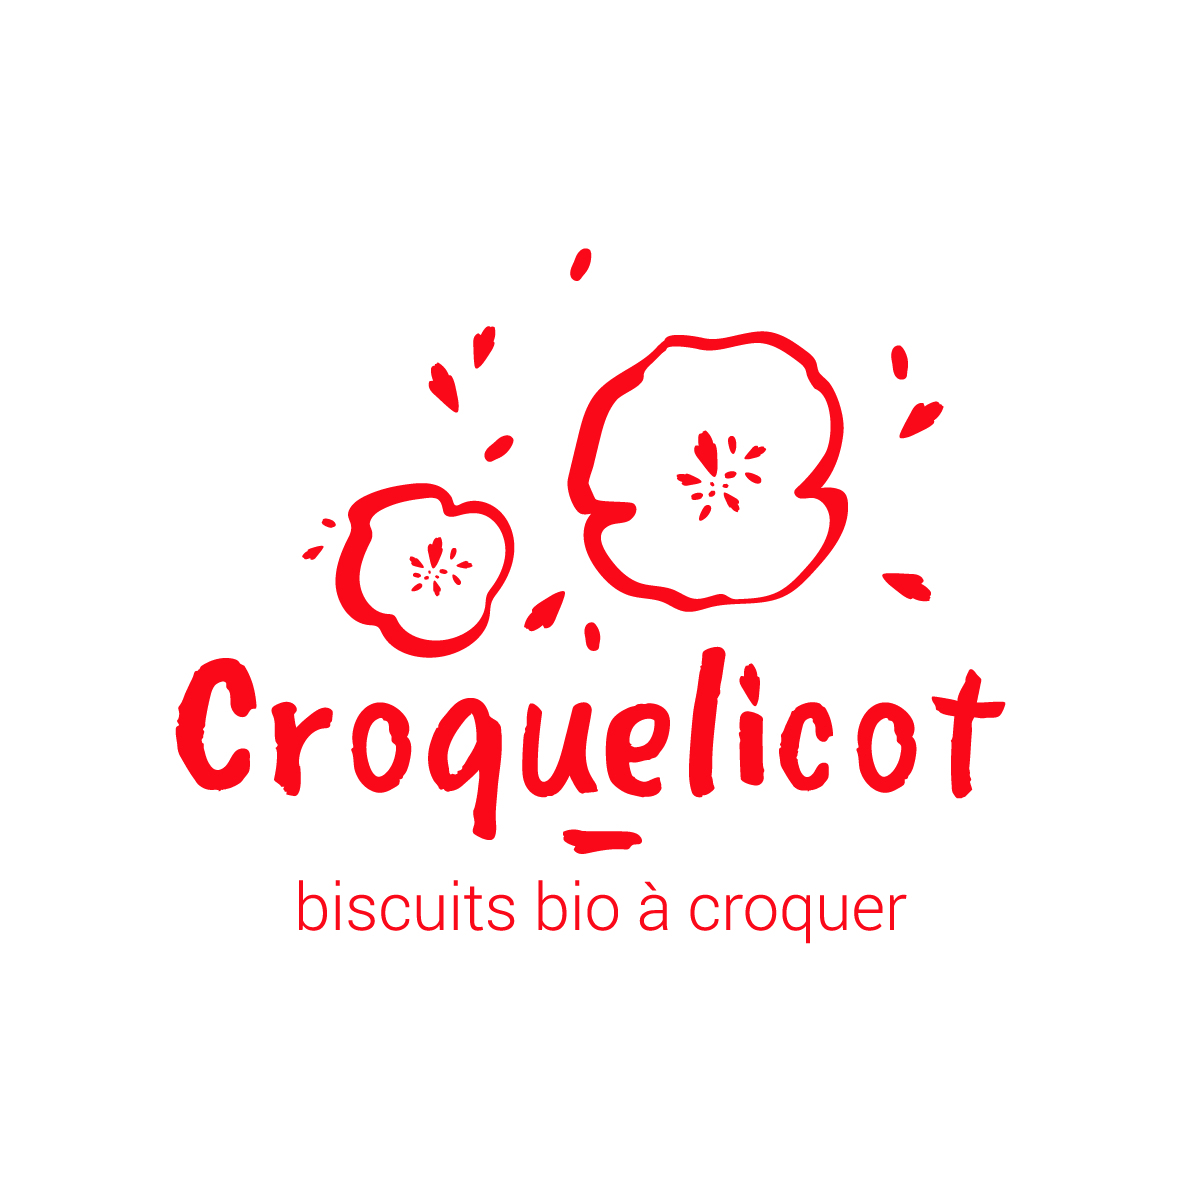 croquelicot-6634-1614188830